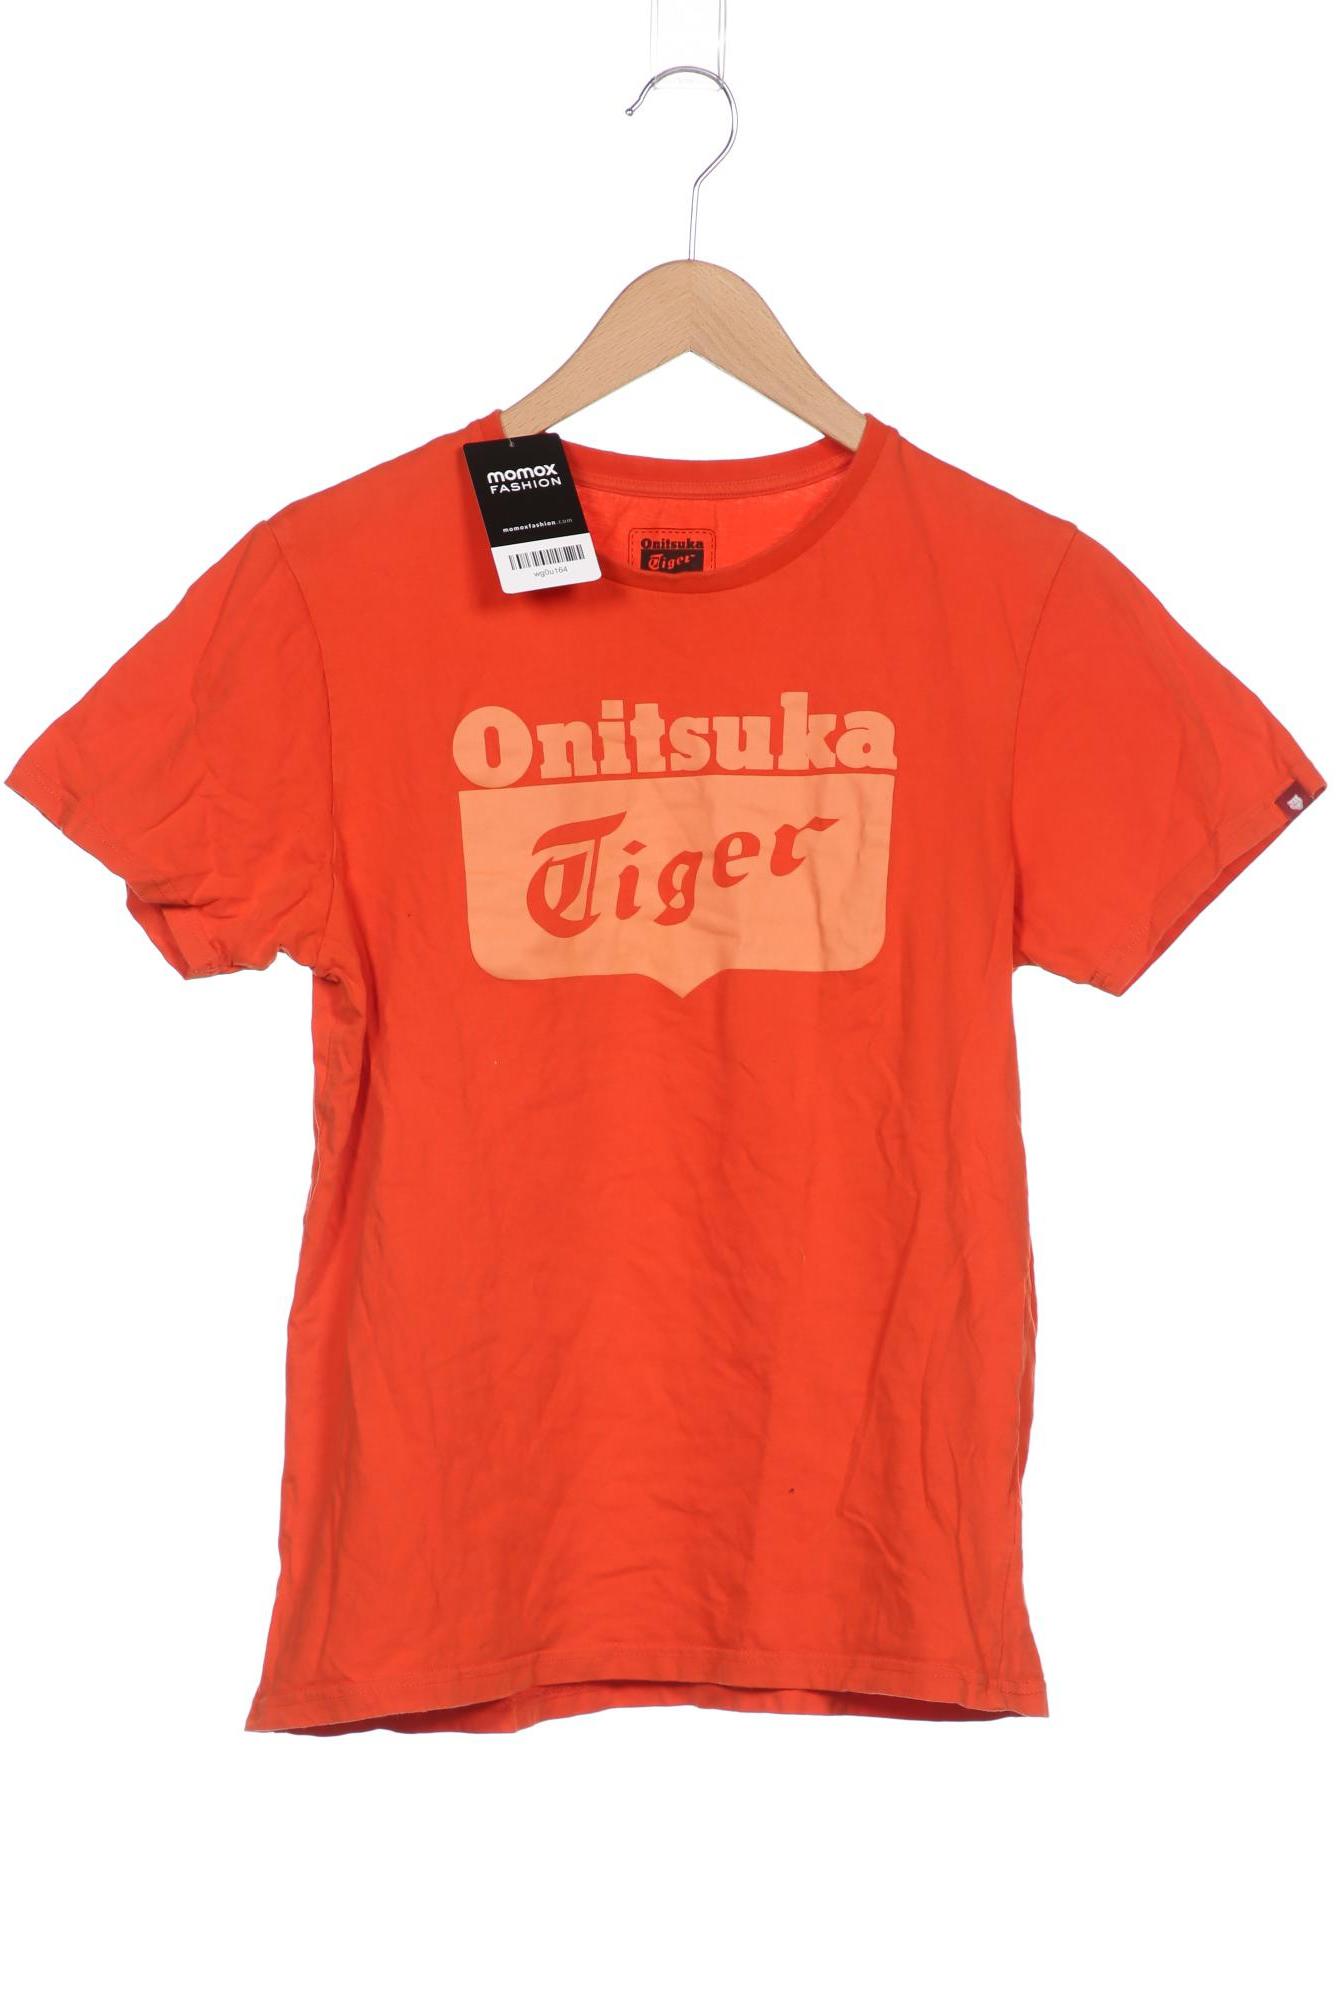 ONITSUKA TIGER Herren T-Shirt, orange von Onitsuka Tiger